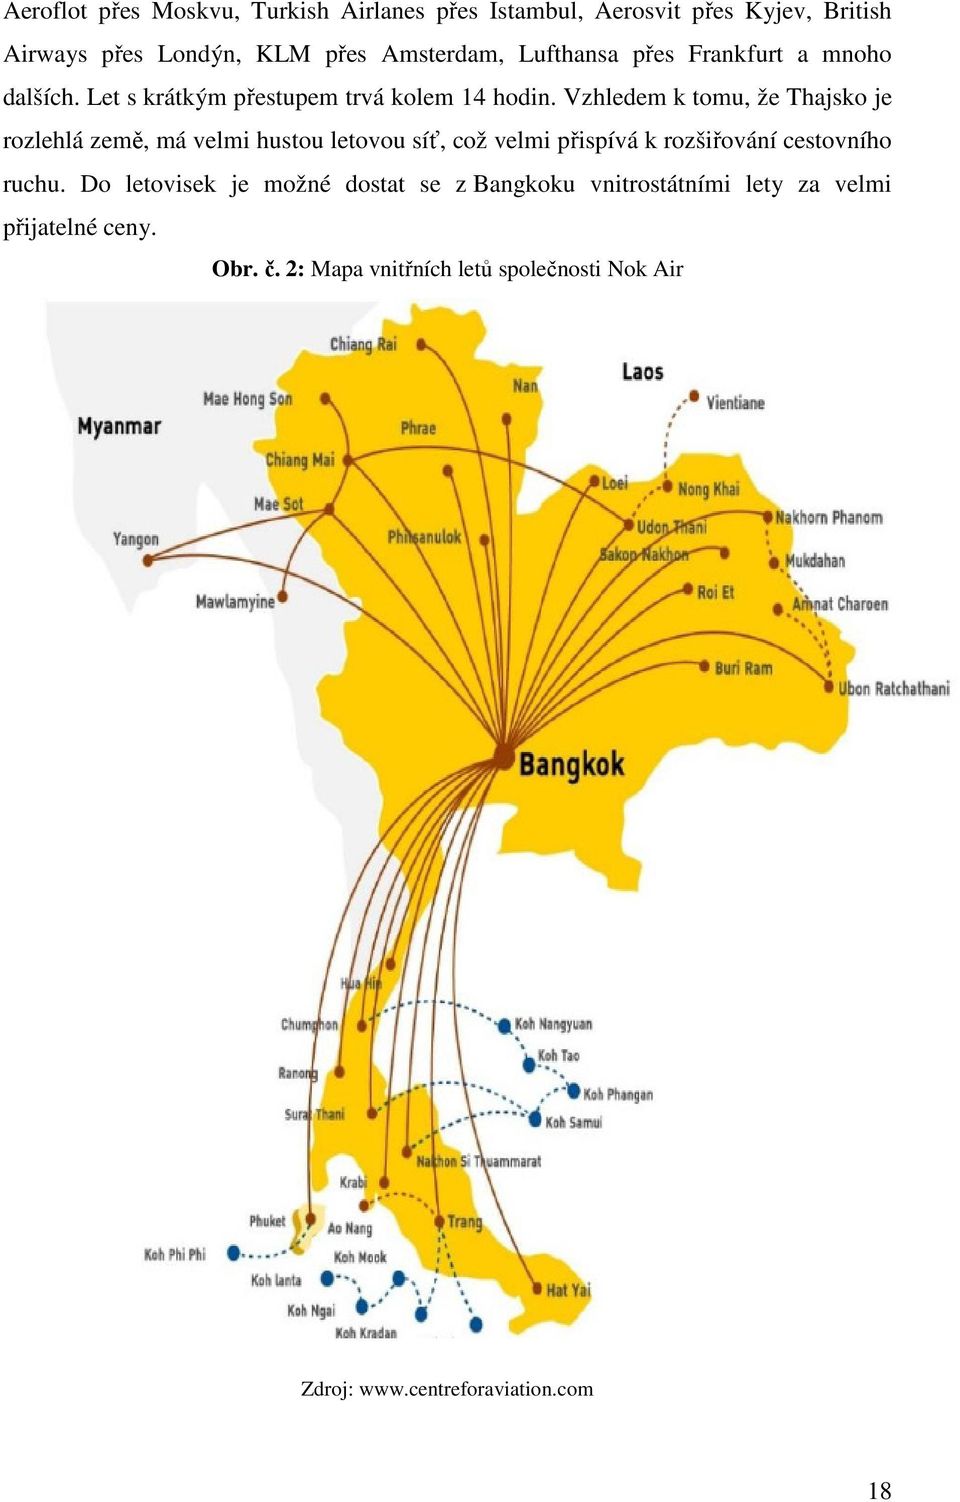 Vzhledem k tomu, že Thajsko je rozlehlá země, má velmi hustou letovou síť, což velmi přispívá k rozšiřování cestovního ruchu.